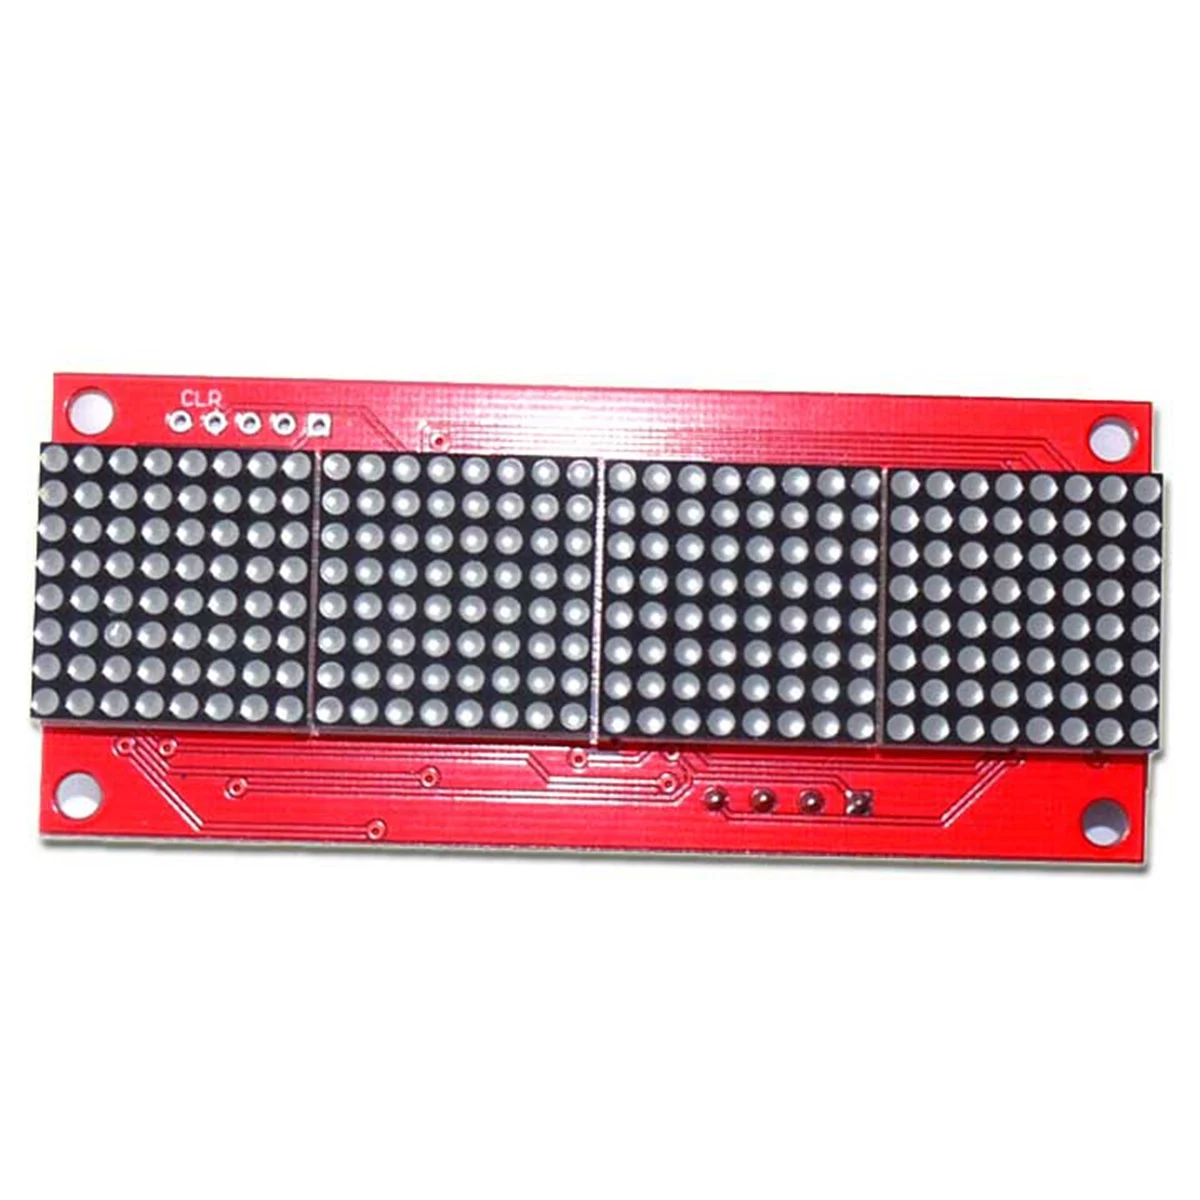 

485 точечный матричный дисплей красный 32x8 точечная матрица 16 уровней регулировки яркости Modbus RTU